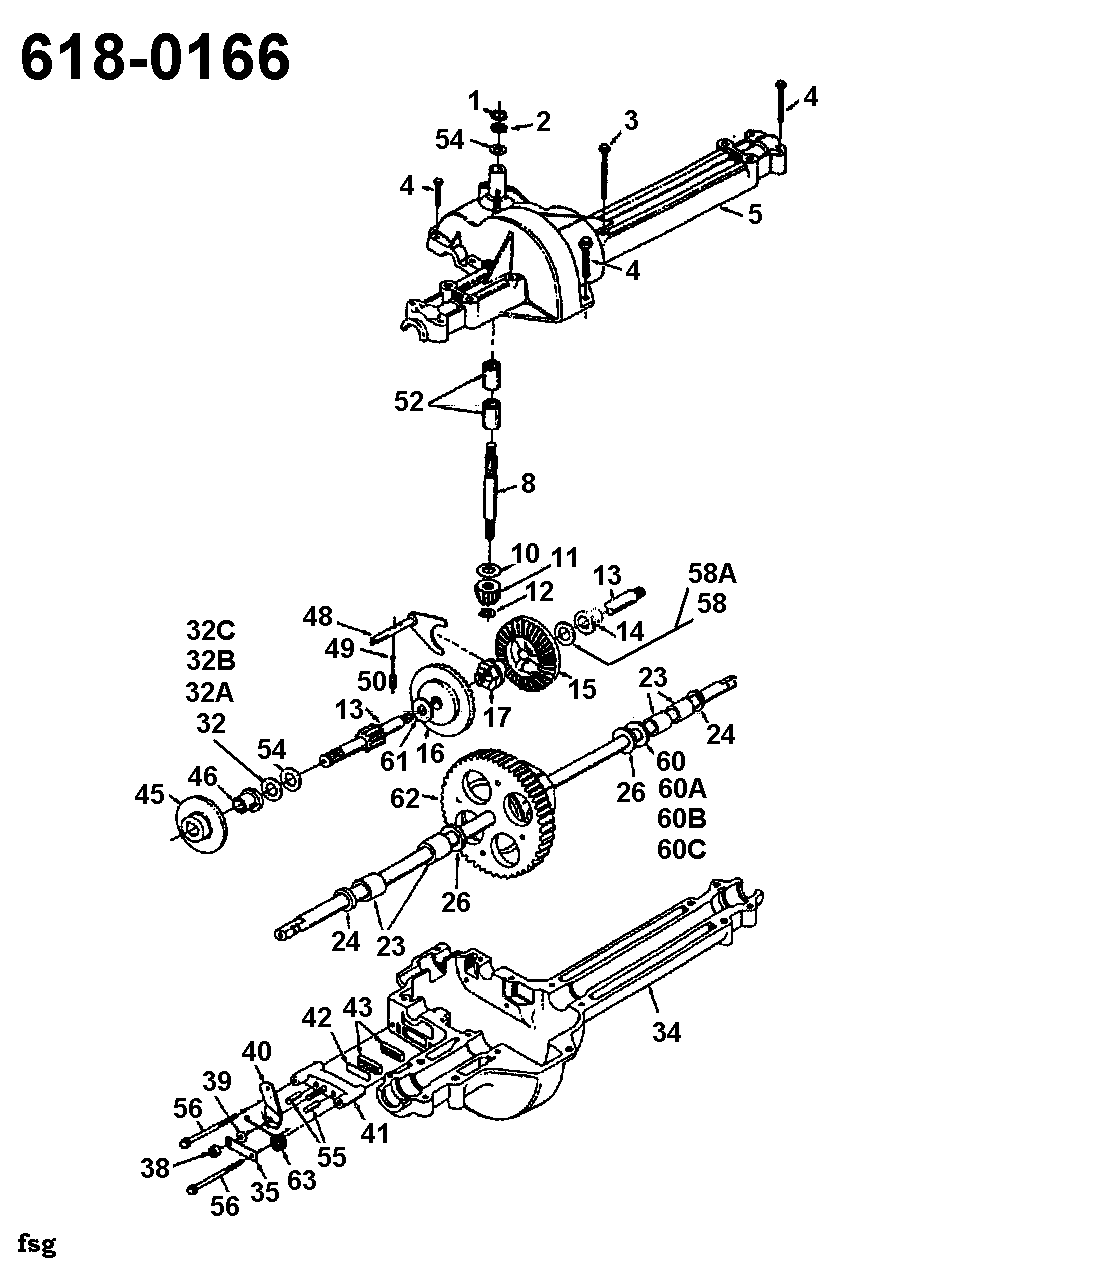 Topflite, Rasentraktoren, B 10, 135C452D649 (1995), Getriebe 618-0166, MTD Ersatzteil-Zeichnungen